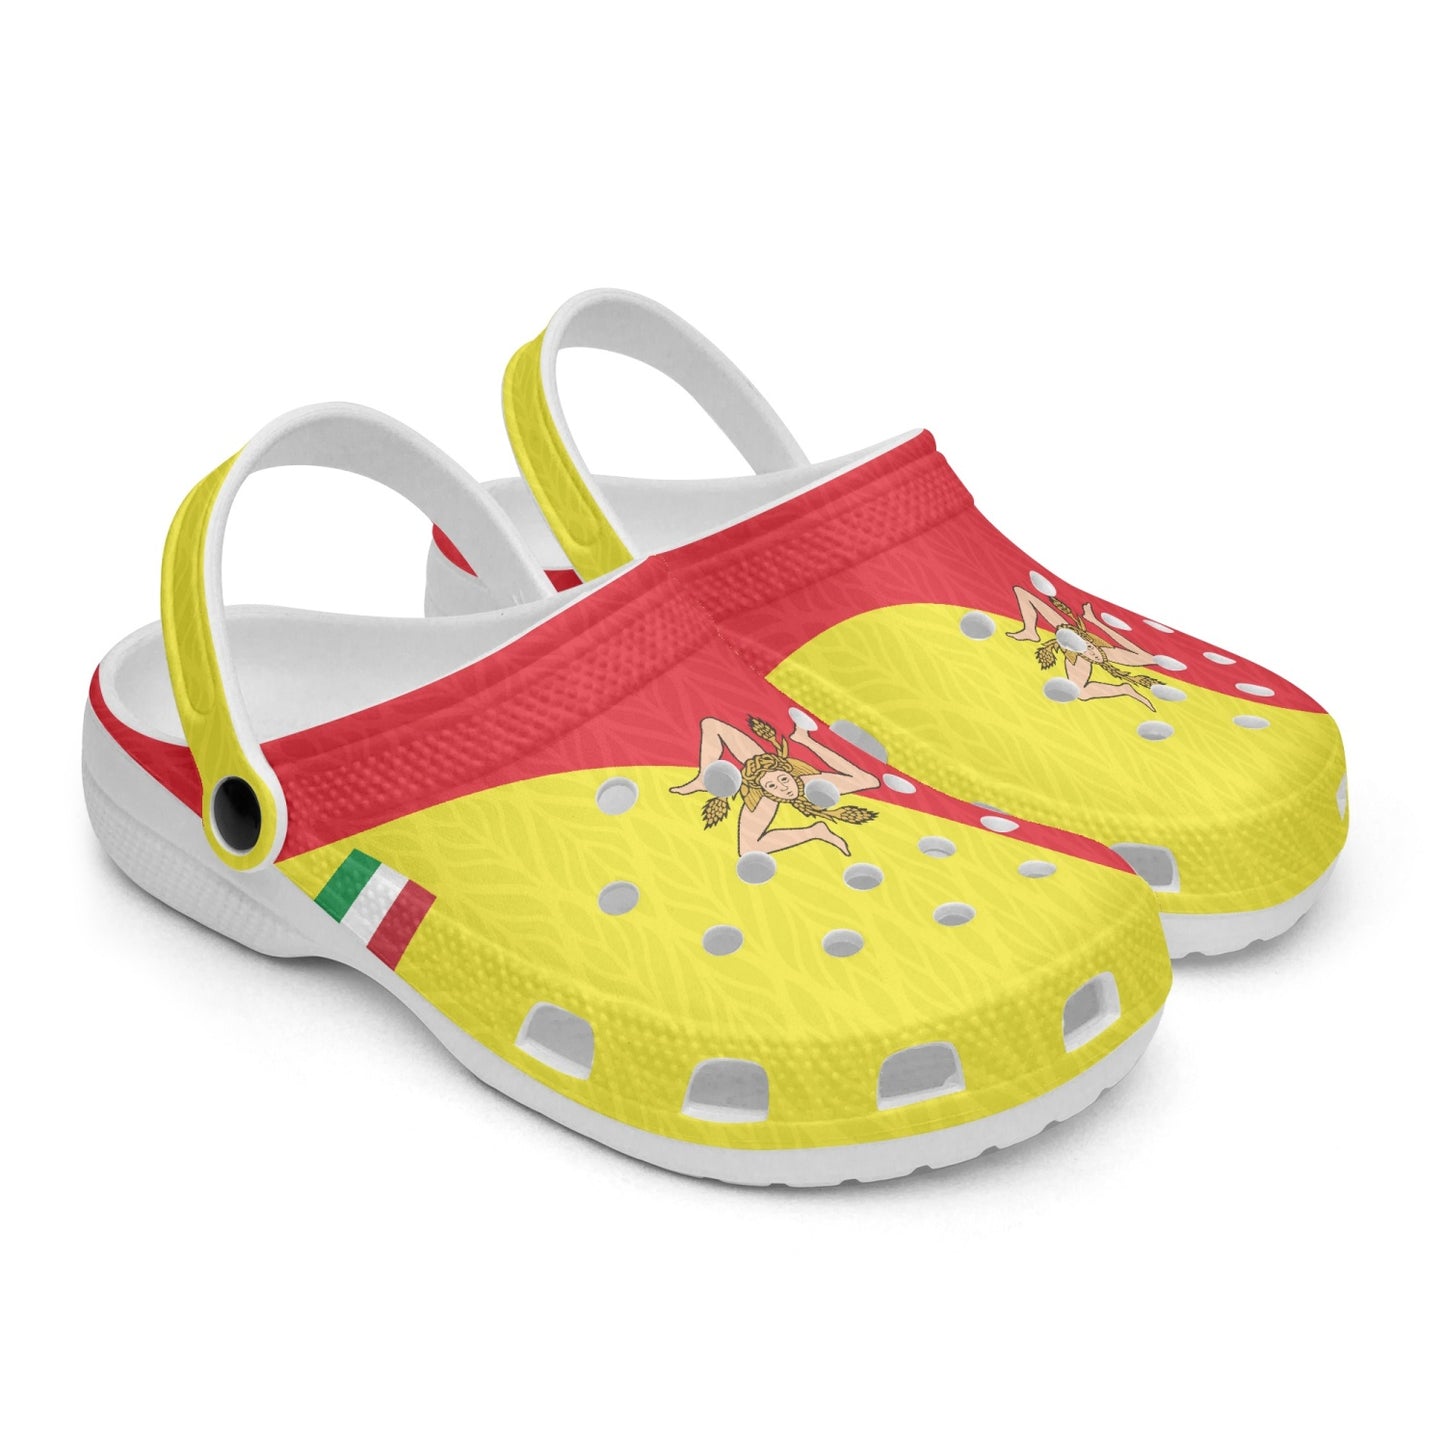 Sicily Clogs shoes